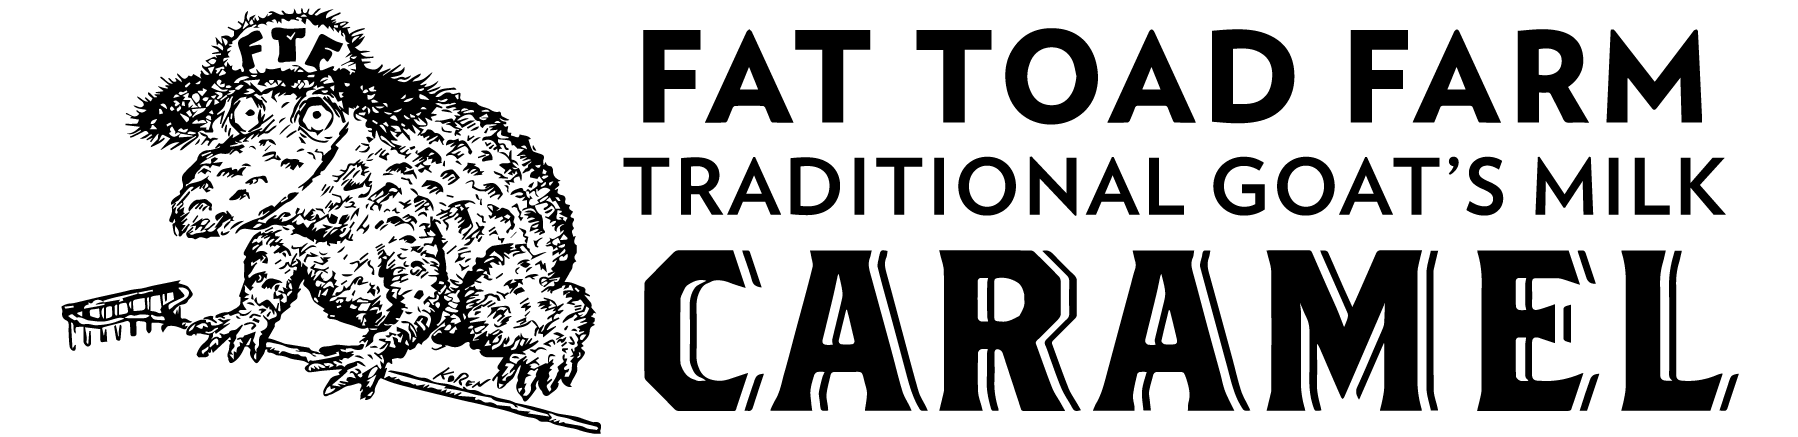 Fat Toad Farm LLC